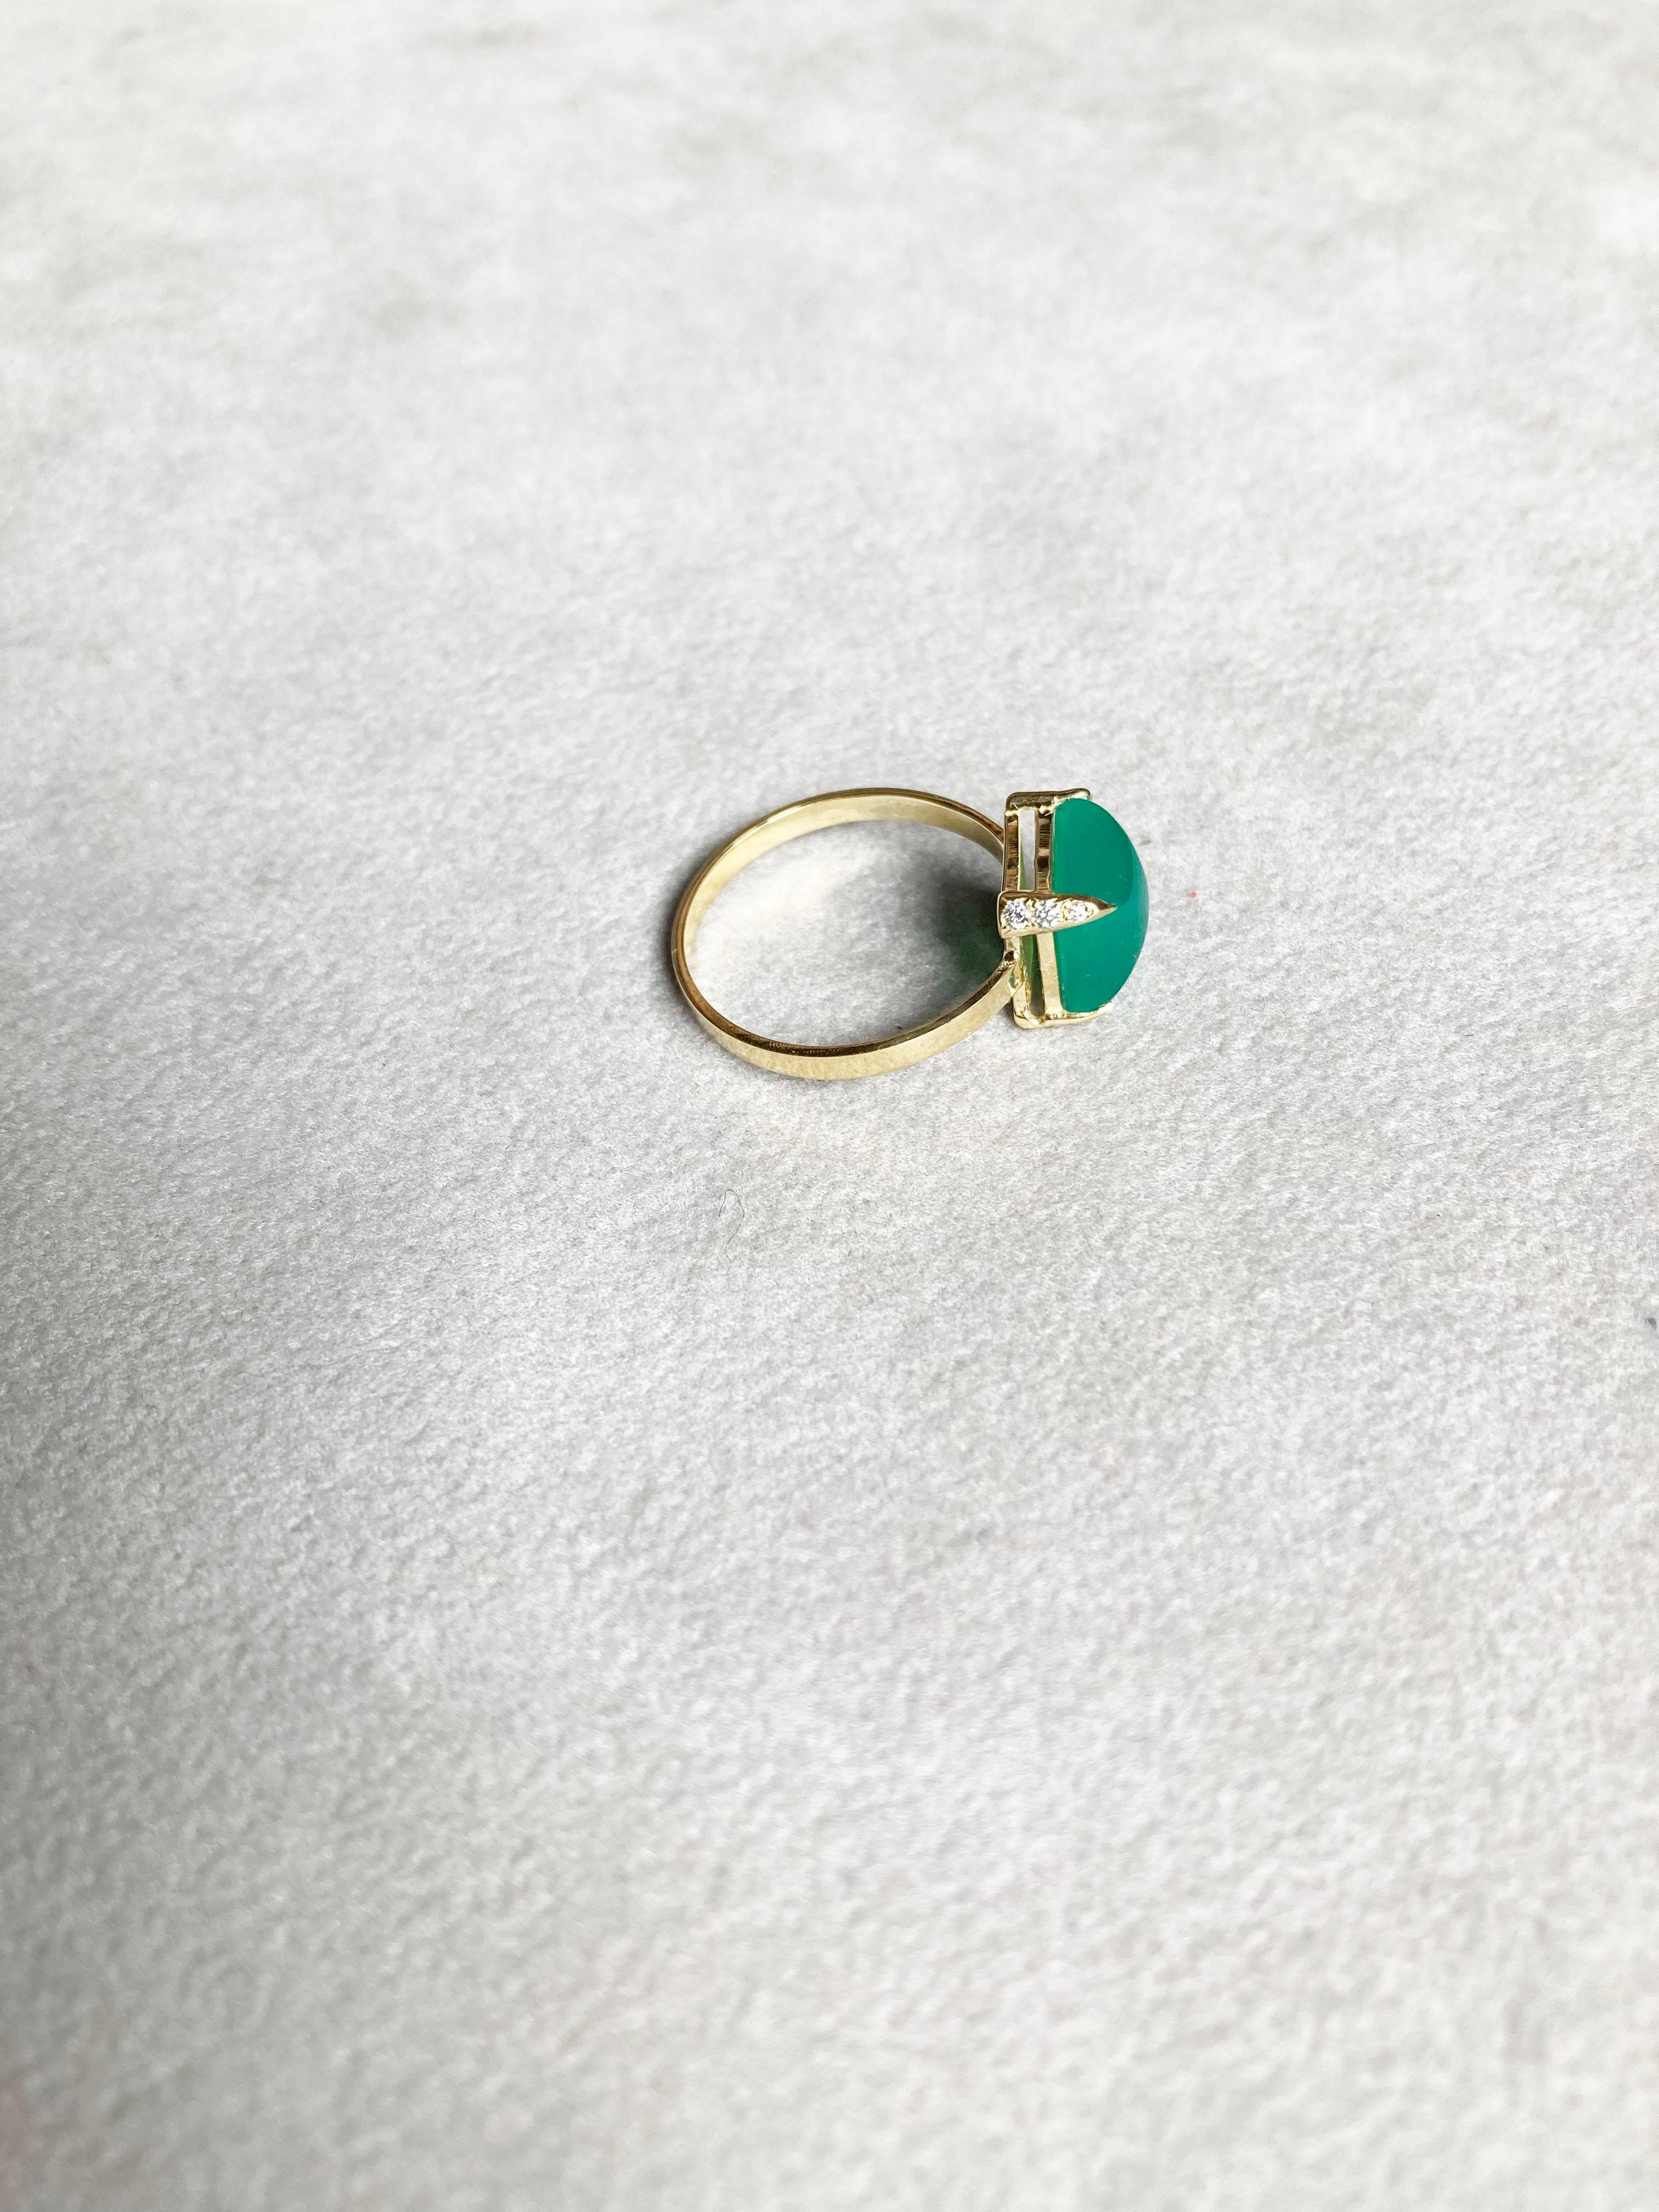 Begeben Sie sich auf eine zeitlose Reise mit dem Ring aus 18 Karat Gelbgold von Rossella Ugolini, der eine bezaubernde smaragdgrüne Farbpyramide aus grünem Achat im Zuckerhutschliff zeigt. Der Schaft des Rings, ein flacher 3 mm breiter Streifen aus